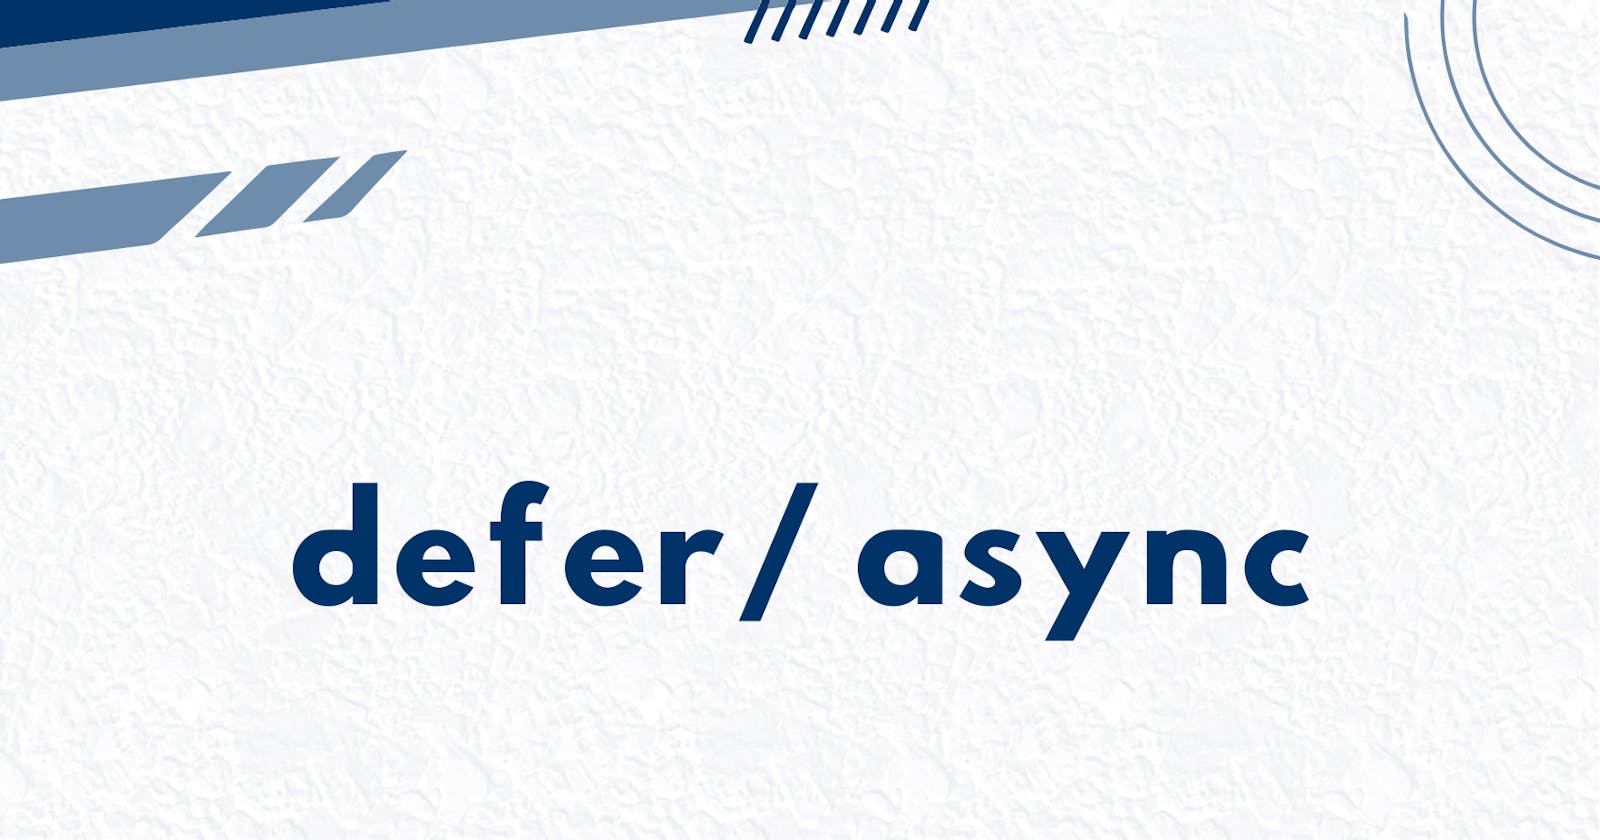 defer / async in <script> tag